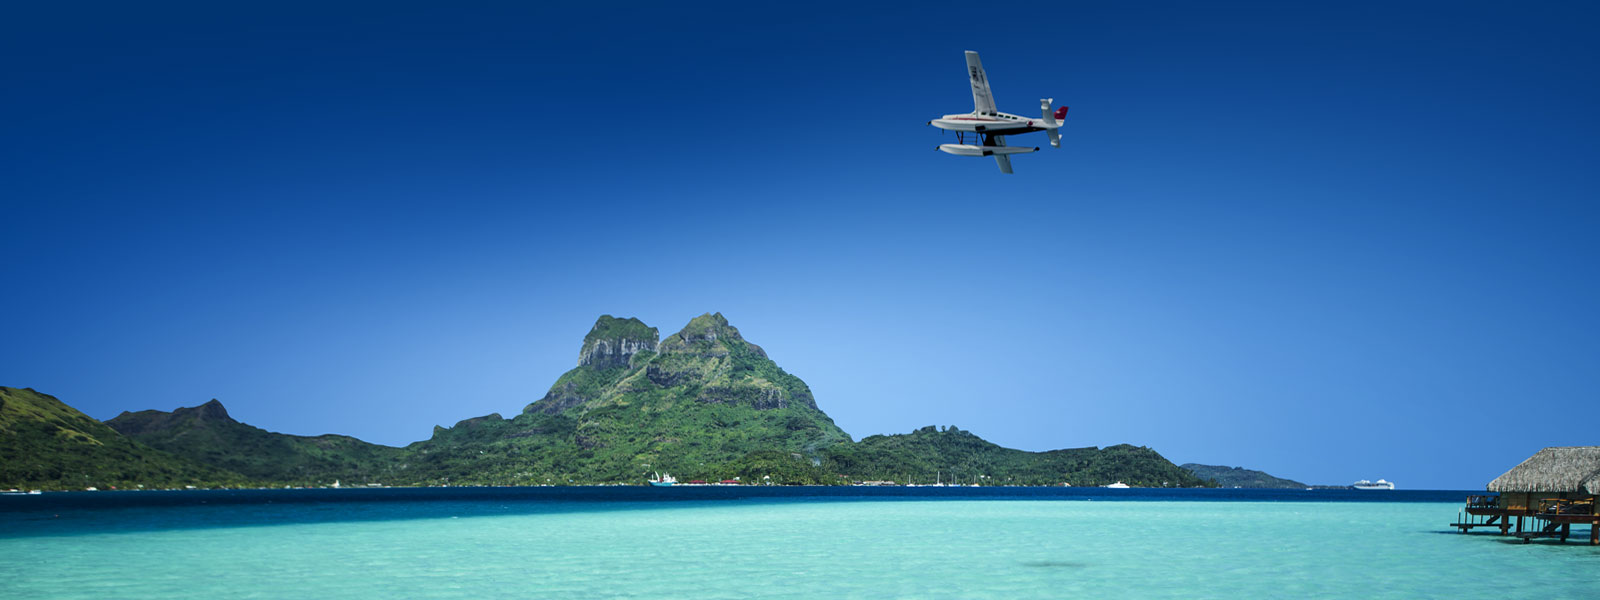 Tahiti Air Charter : la première compagnie aérienne française d’hydravions